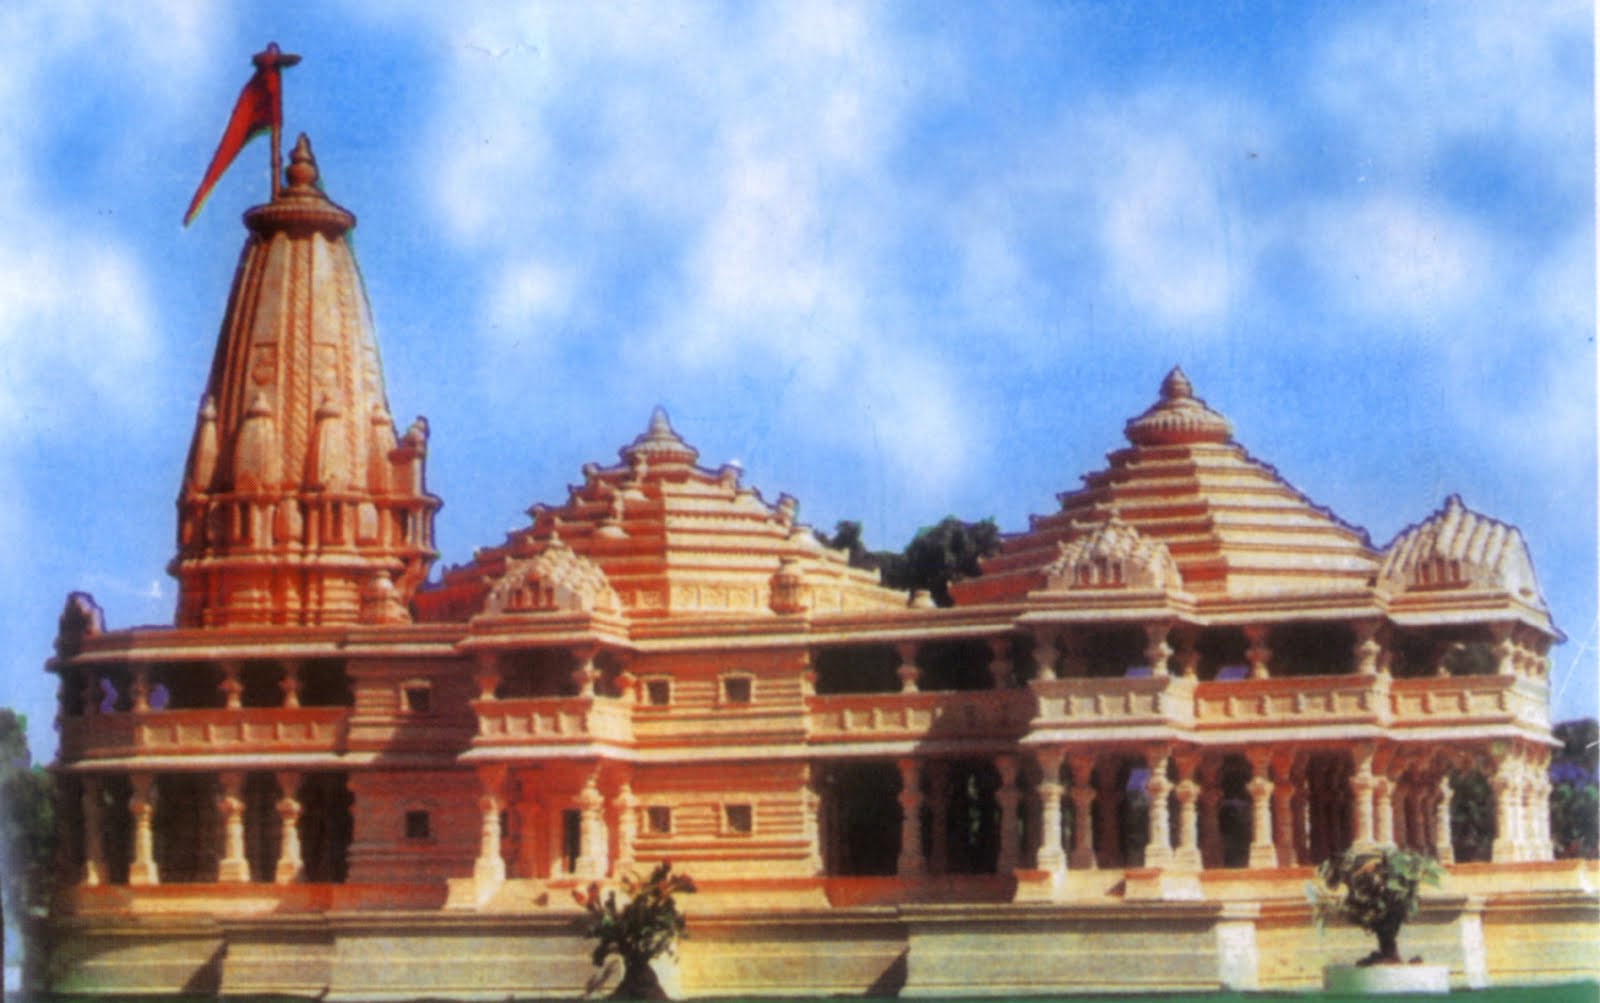 Ram Mandir, Ram Temple, Babri Masjid, Vishwa Hindu Parishad, Rashtriya Swayamsevak Sangh, Ayodhya, Natonal news, Politics news